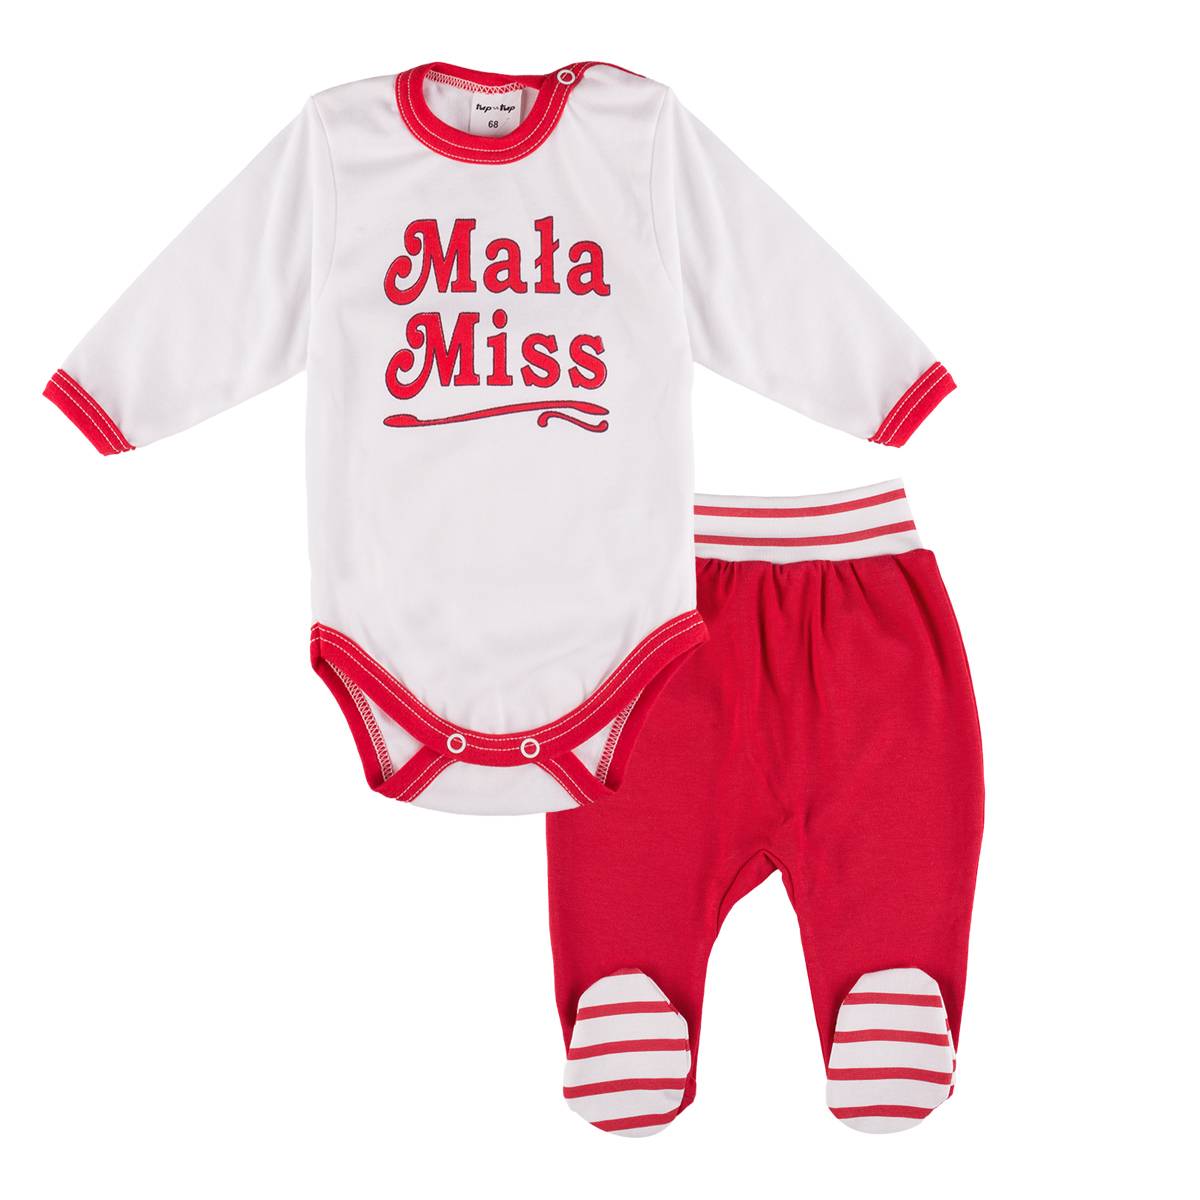 Komplet dziewczęcy body długi rękaw i spodnie dresowe, biało-czerwony Mała Miss, Tup Tup